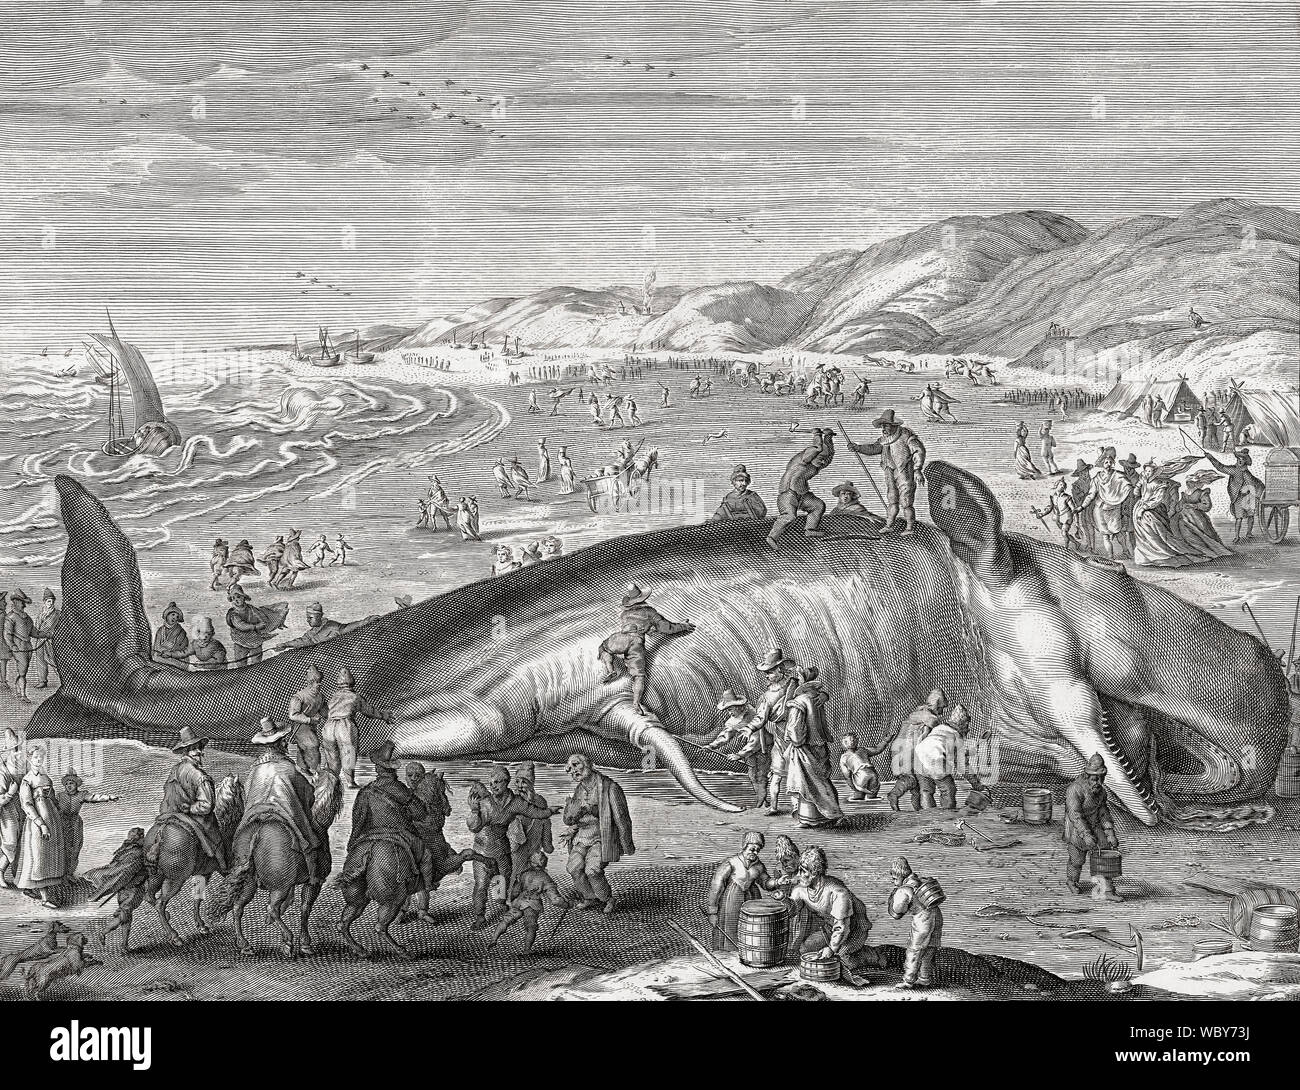 Sperma balena bloccati sulla spiaggia olandese nel 1598. Ha attratto molti visitatori di cui l'artista Henrik Goltzius. Questa illustrazione è stata realizzata da Jacob Mathan dopo Goltzius di lavoro Foto Stock